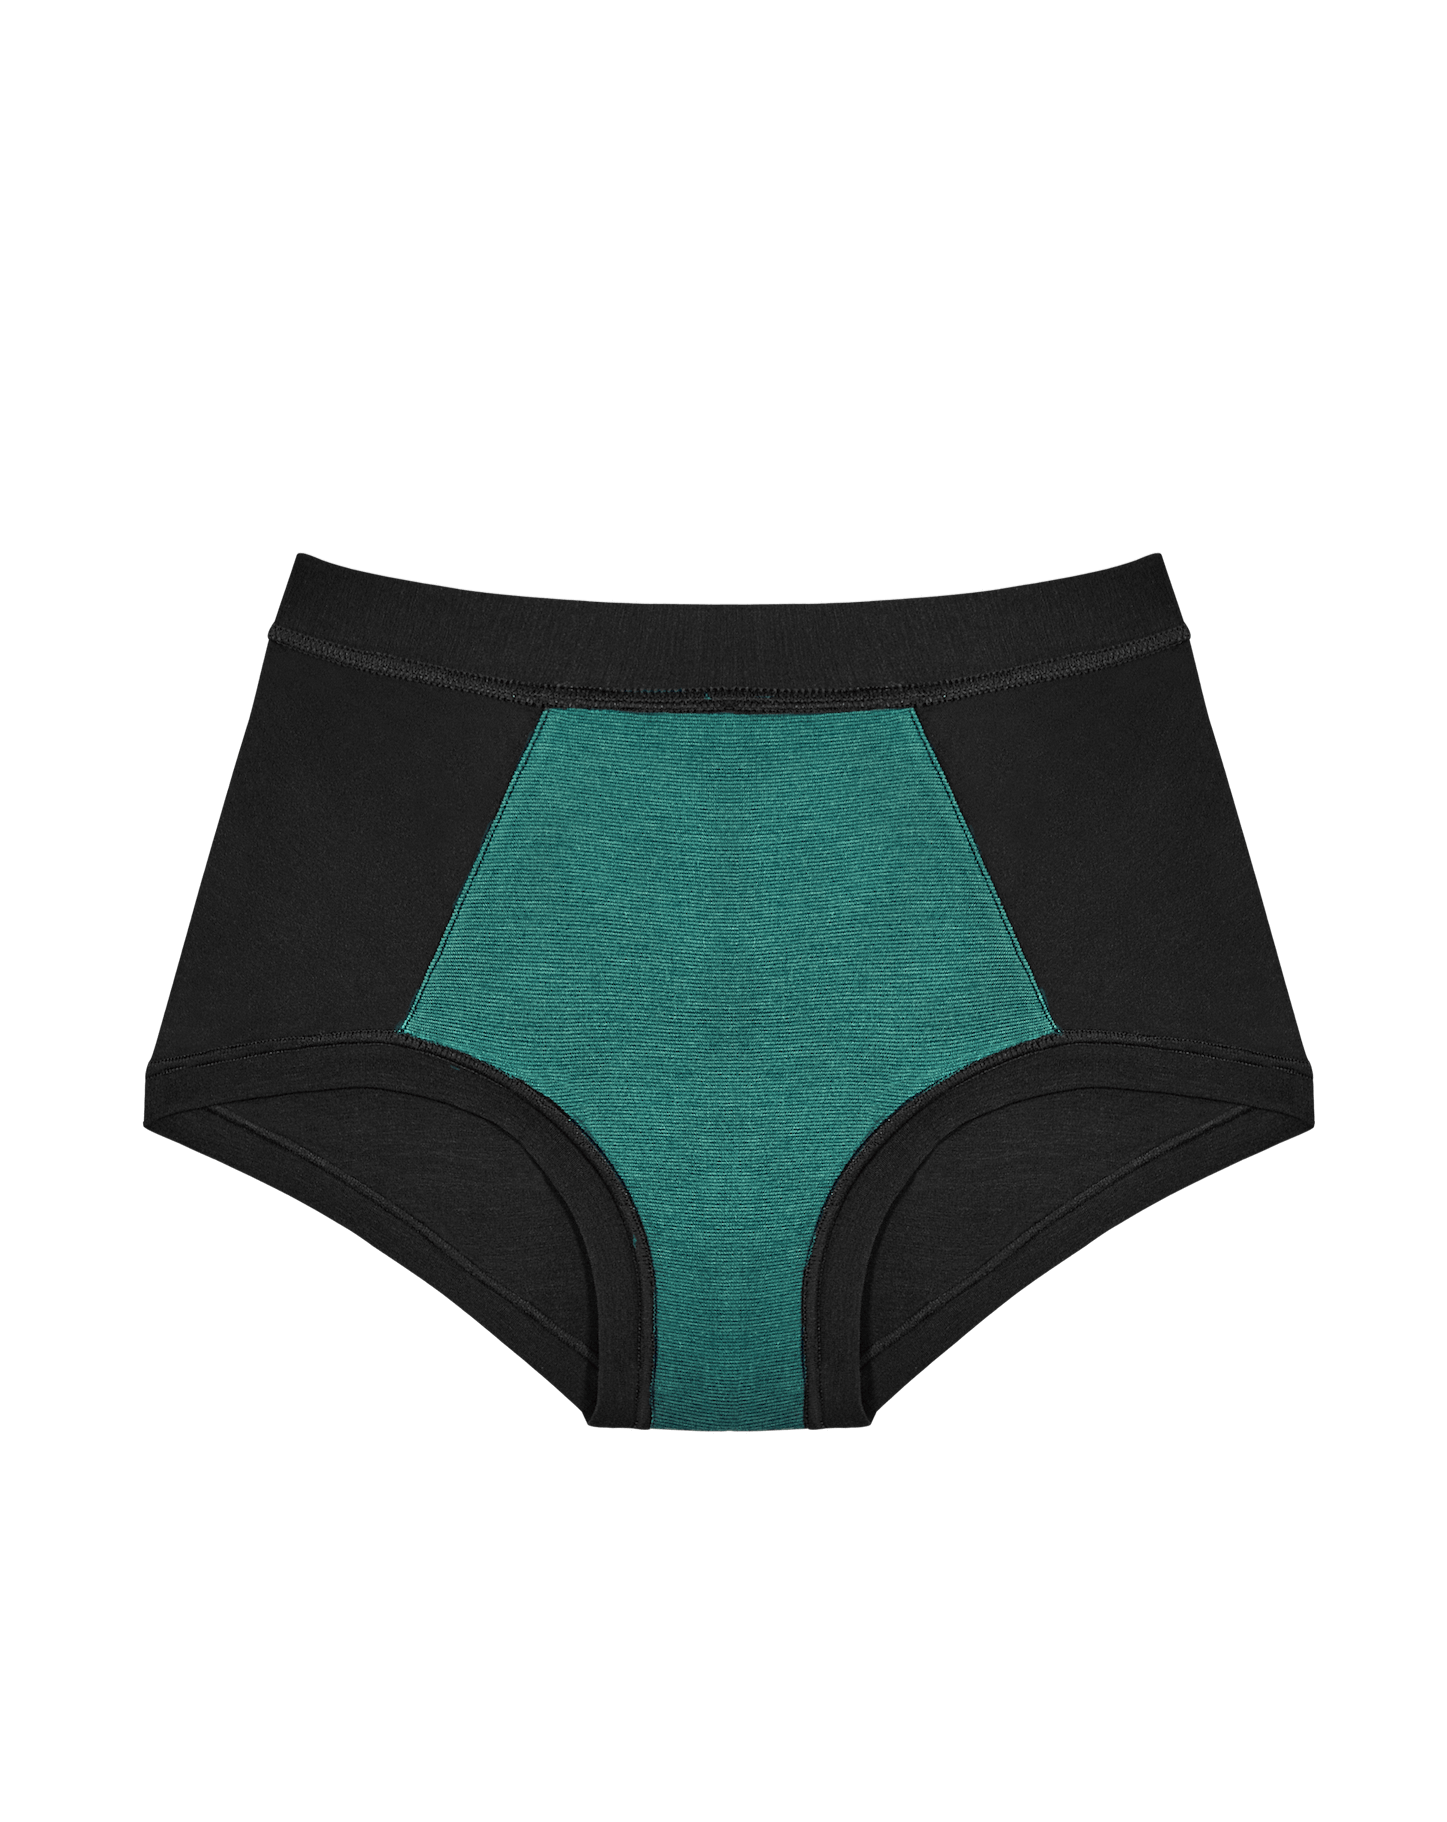 Brief – huha underwear